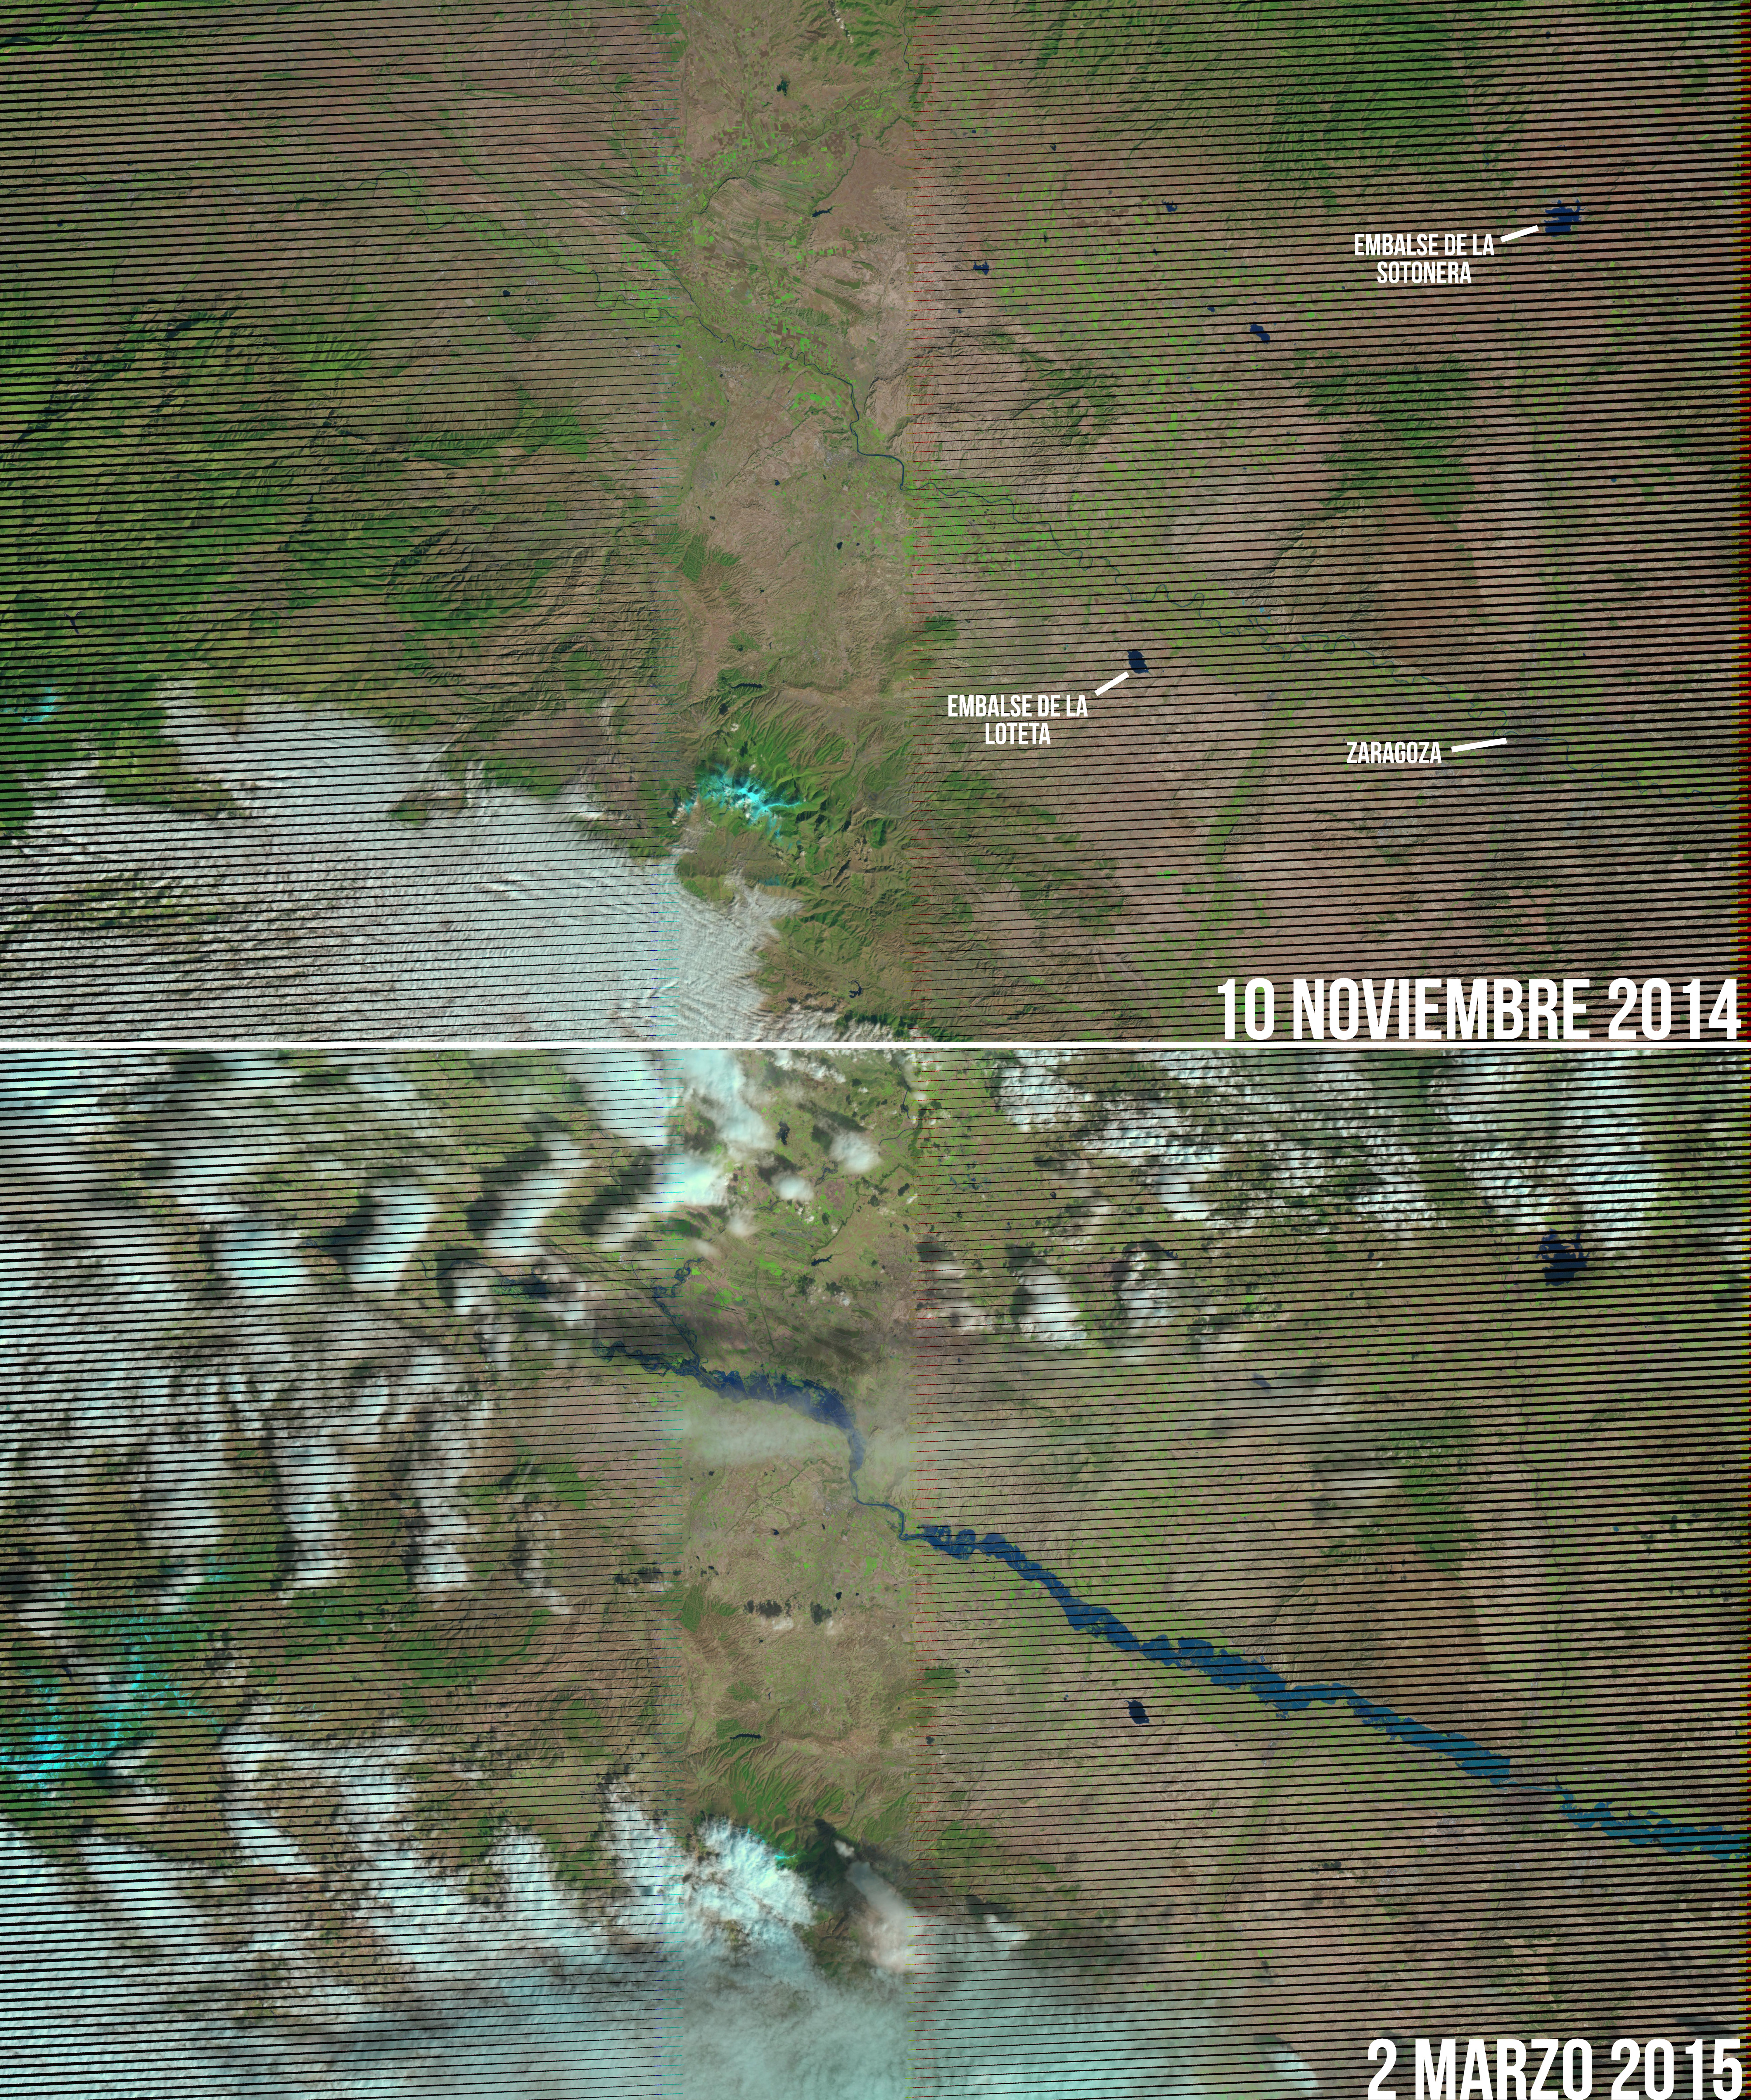 Las inundaciones del Ebro, vistas por el Landsat 7. Las franjas negras se deben a una avería en su sistema de toma de imágenes. NASA.